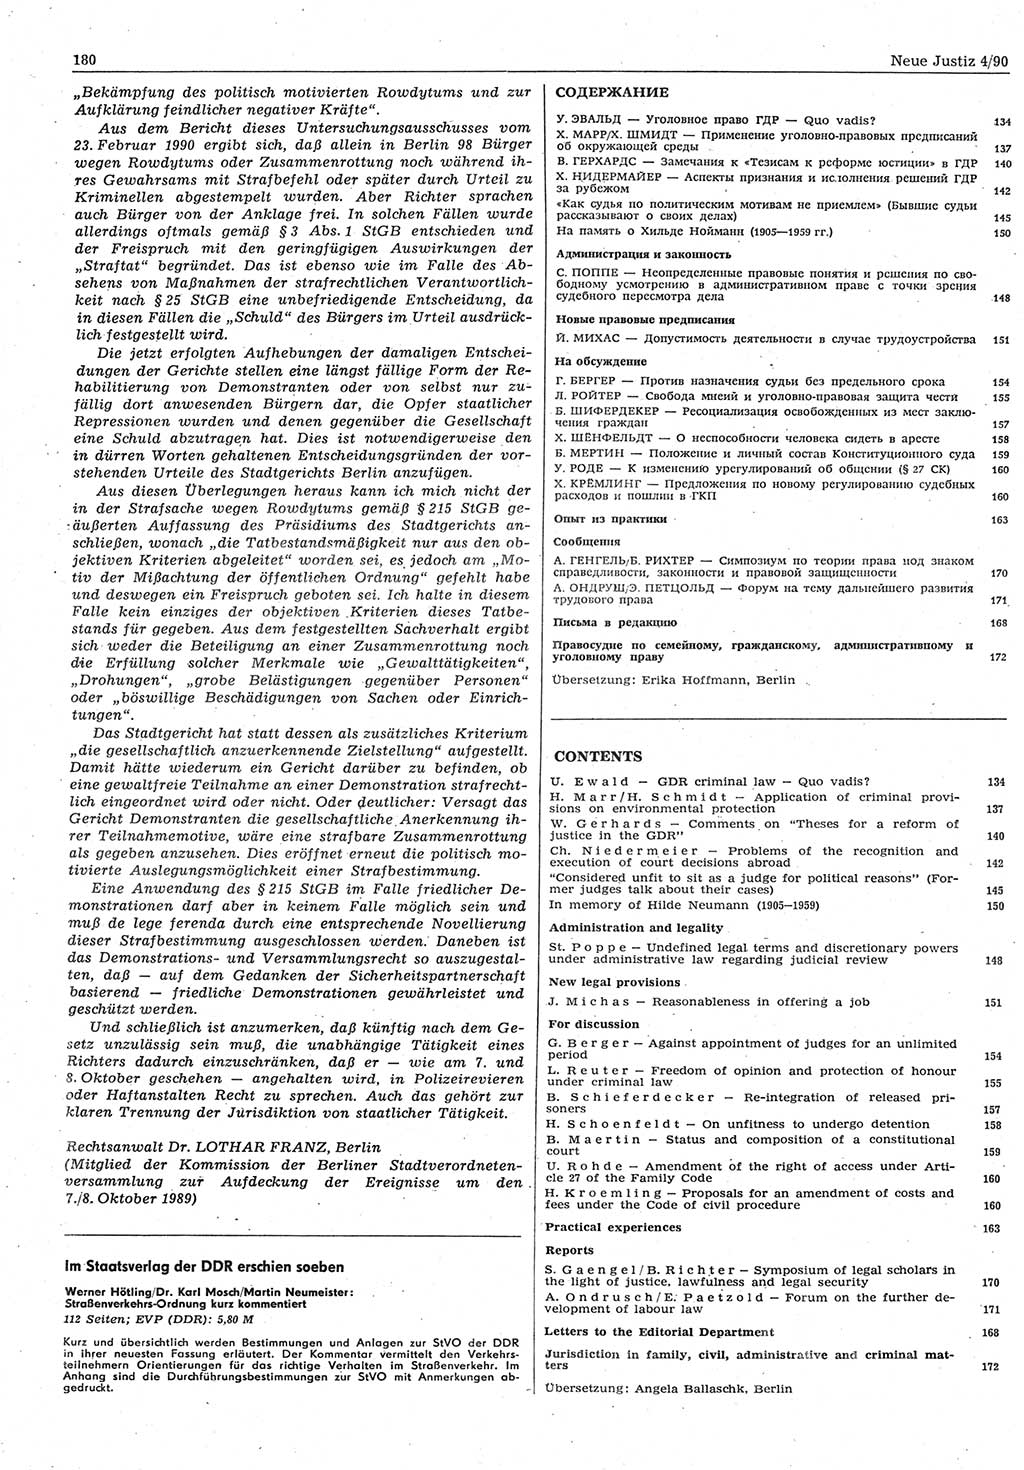 Neue Justiz (NJ), Zeitschrift für Rechtsetzung und Rechtsanwendung [Deutsche Demokratische Republik (DDR)], 44. Jahrgang 1990, Seite 180 (NJ DDR 1990, S. 180)